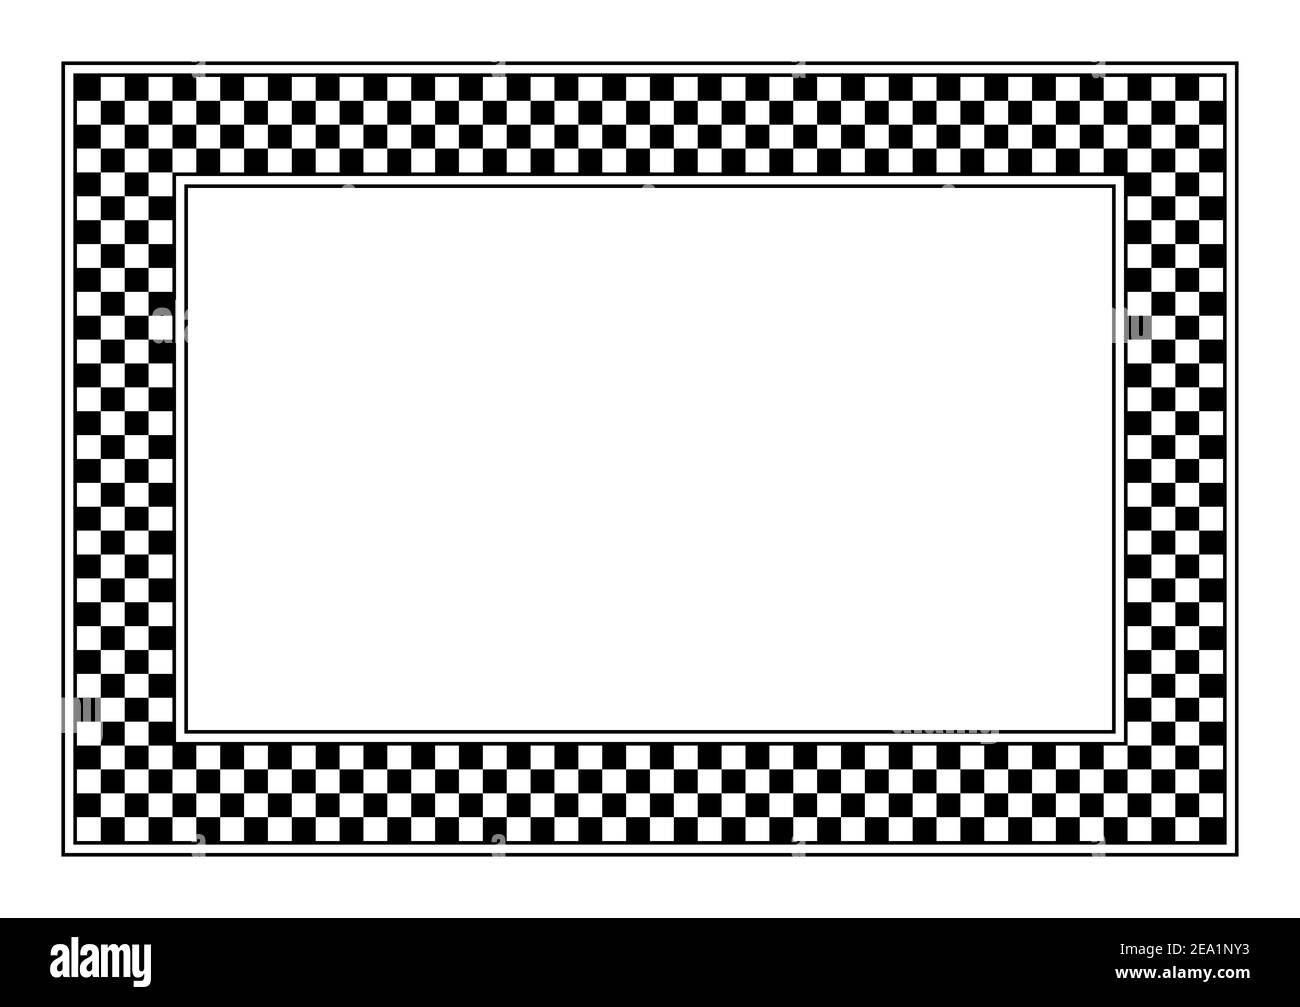 Patrón de tablero de ajedrez, marco rectangular. Un marco de patrón a cuadros, hecho de un diagrama de tablero de ajedrez que consiste en cuadrados alternantes negros y blancos. Foto de stock